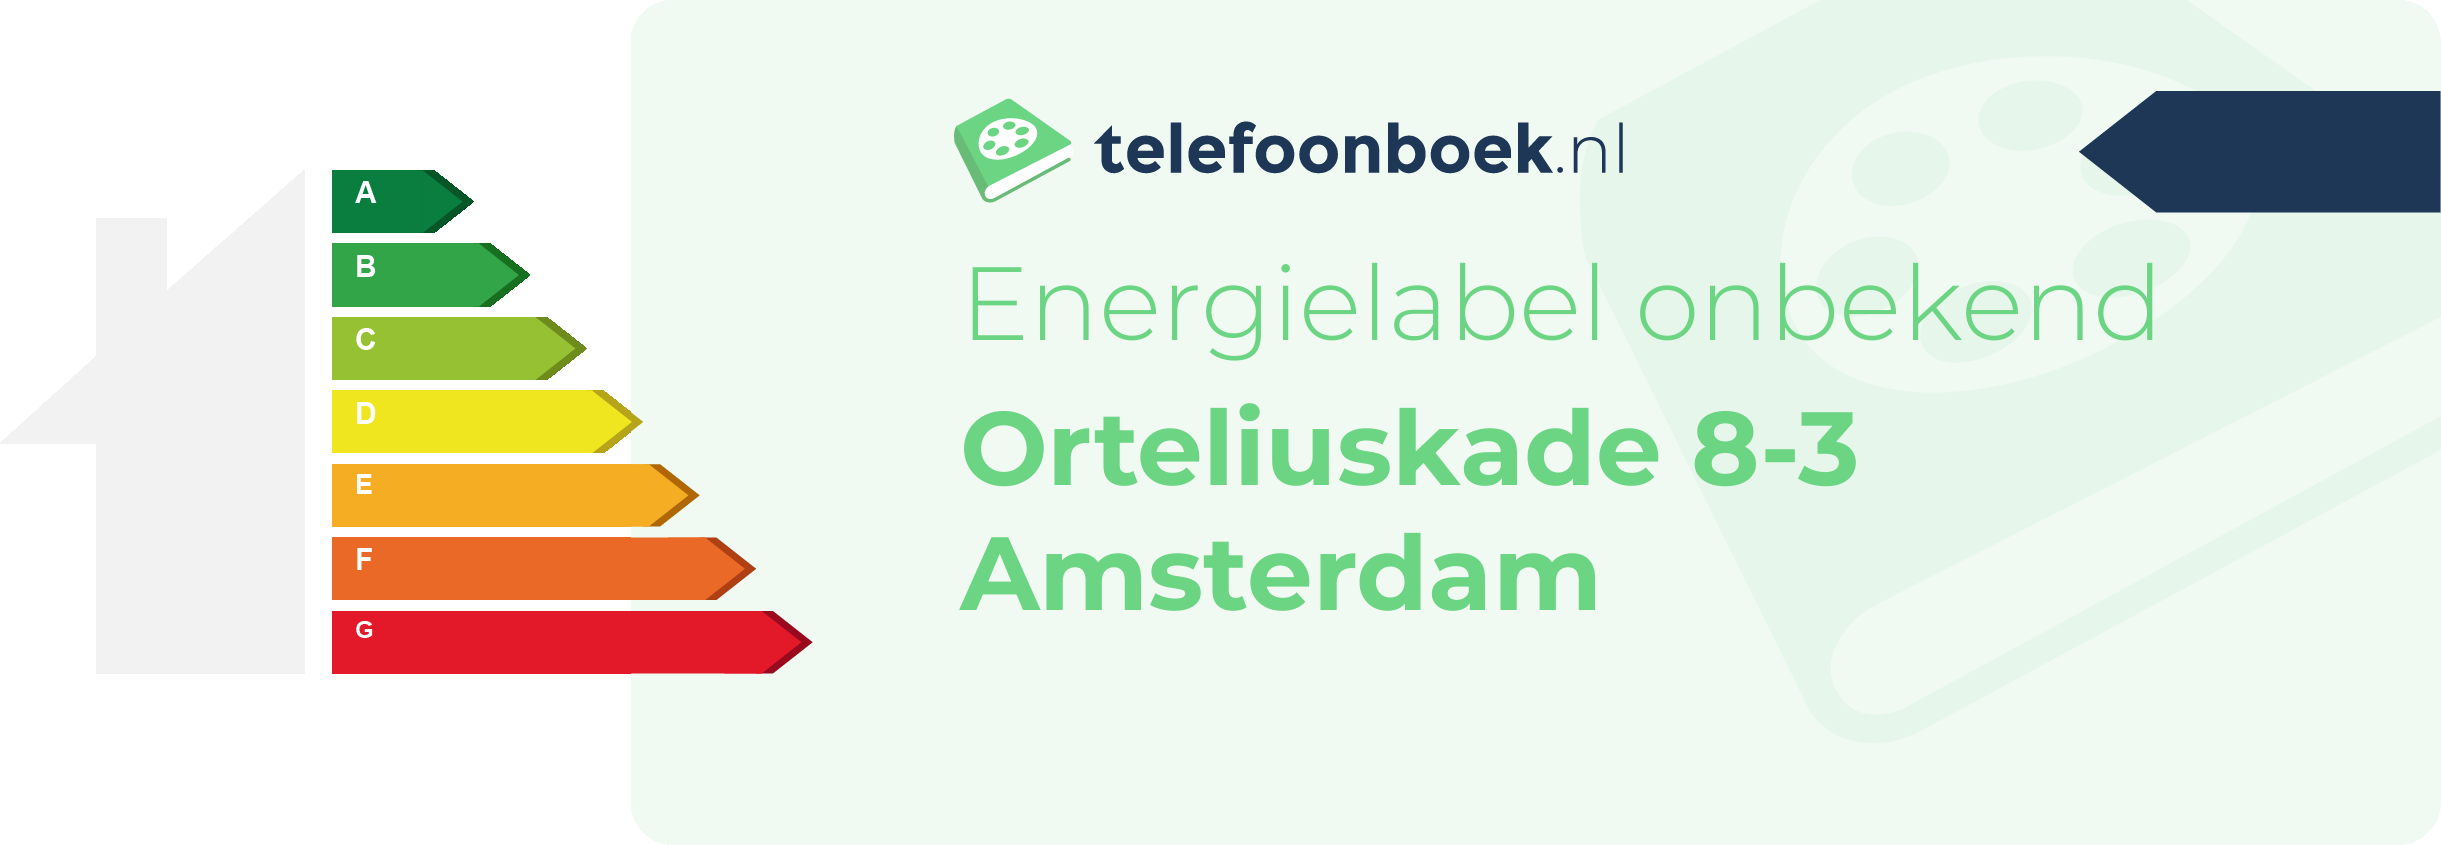 Energielabel Orteliuskade 8-3 Amsterdam